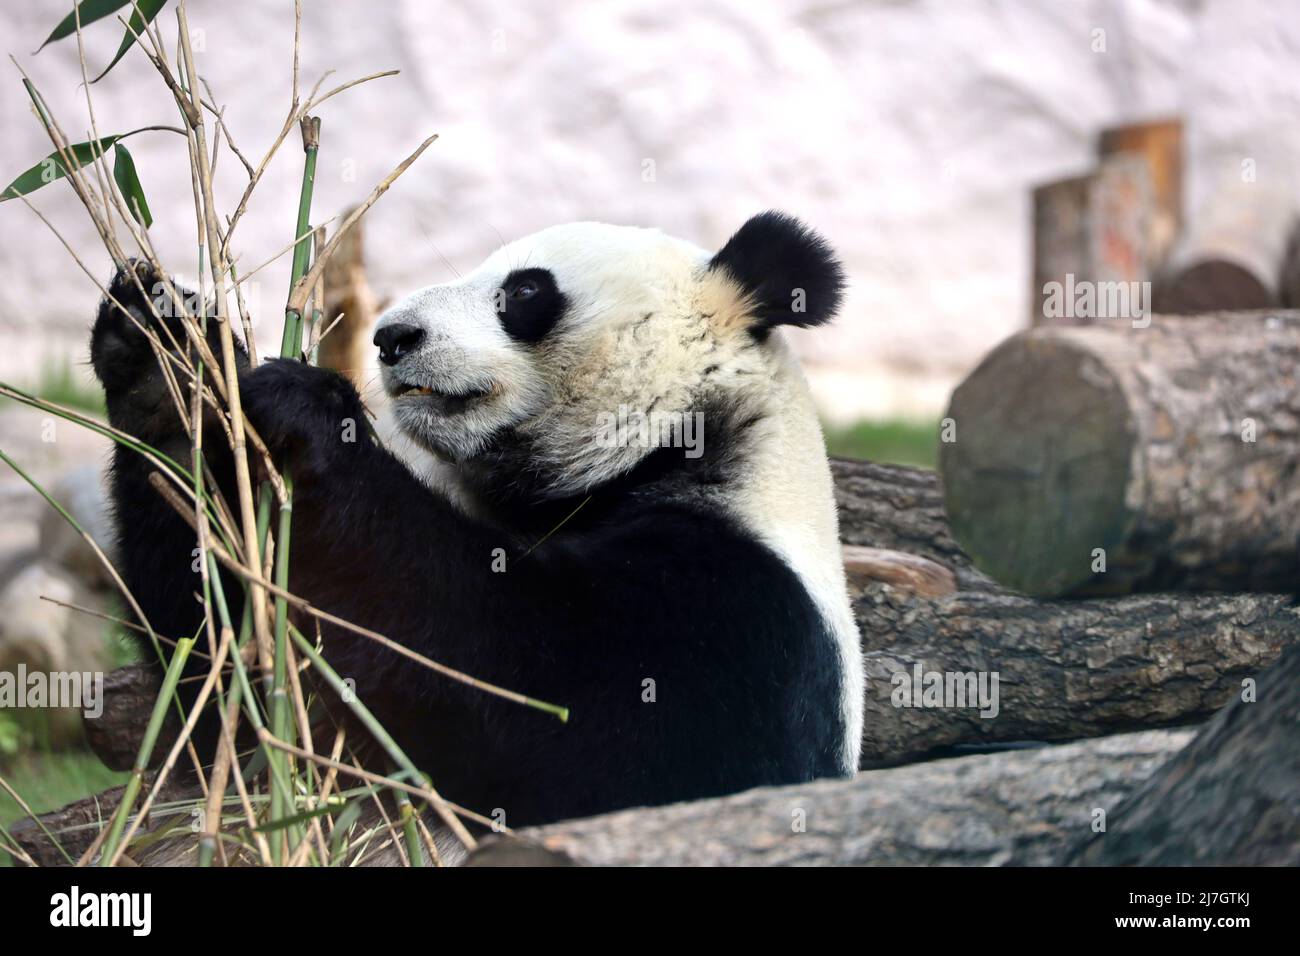 Panda comiendo brotes de bambú en un zoológico, retrato del oso blanco y negro en peligro de extinción Foto de stock